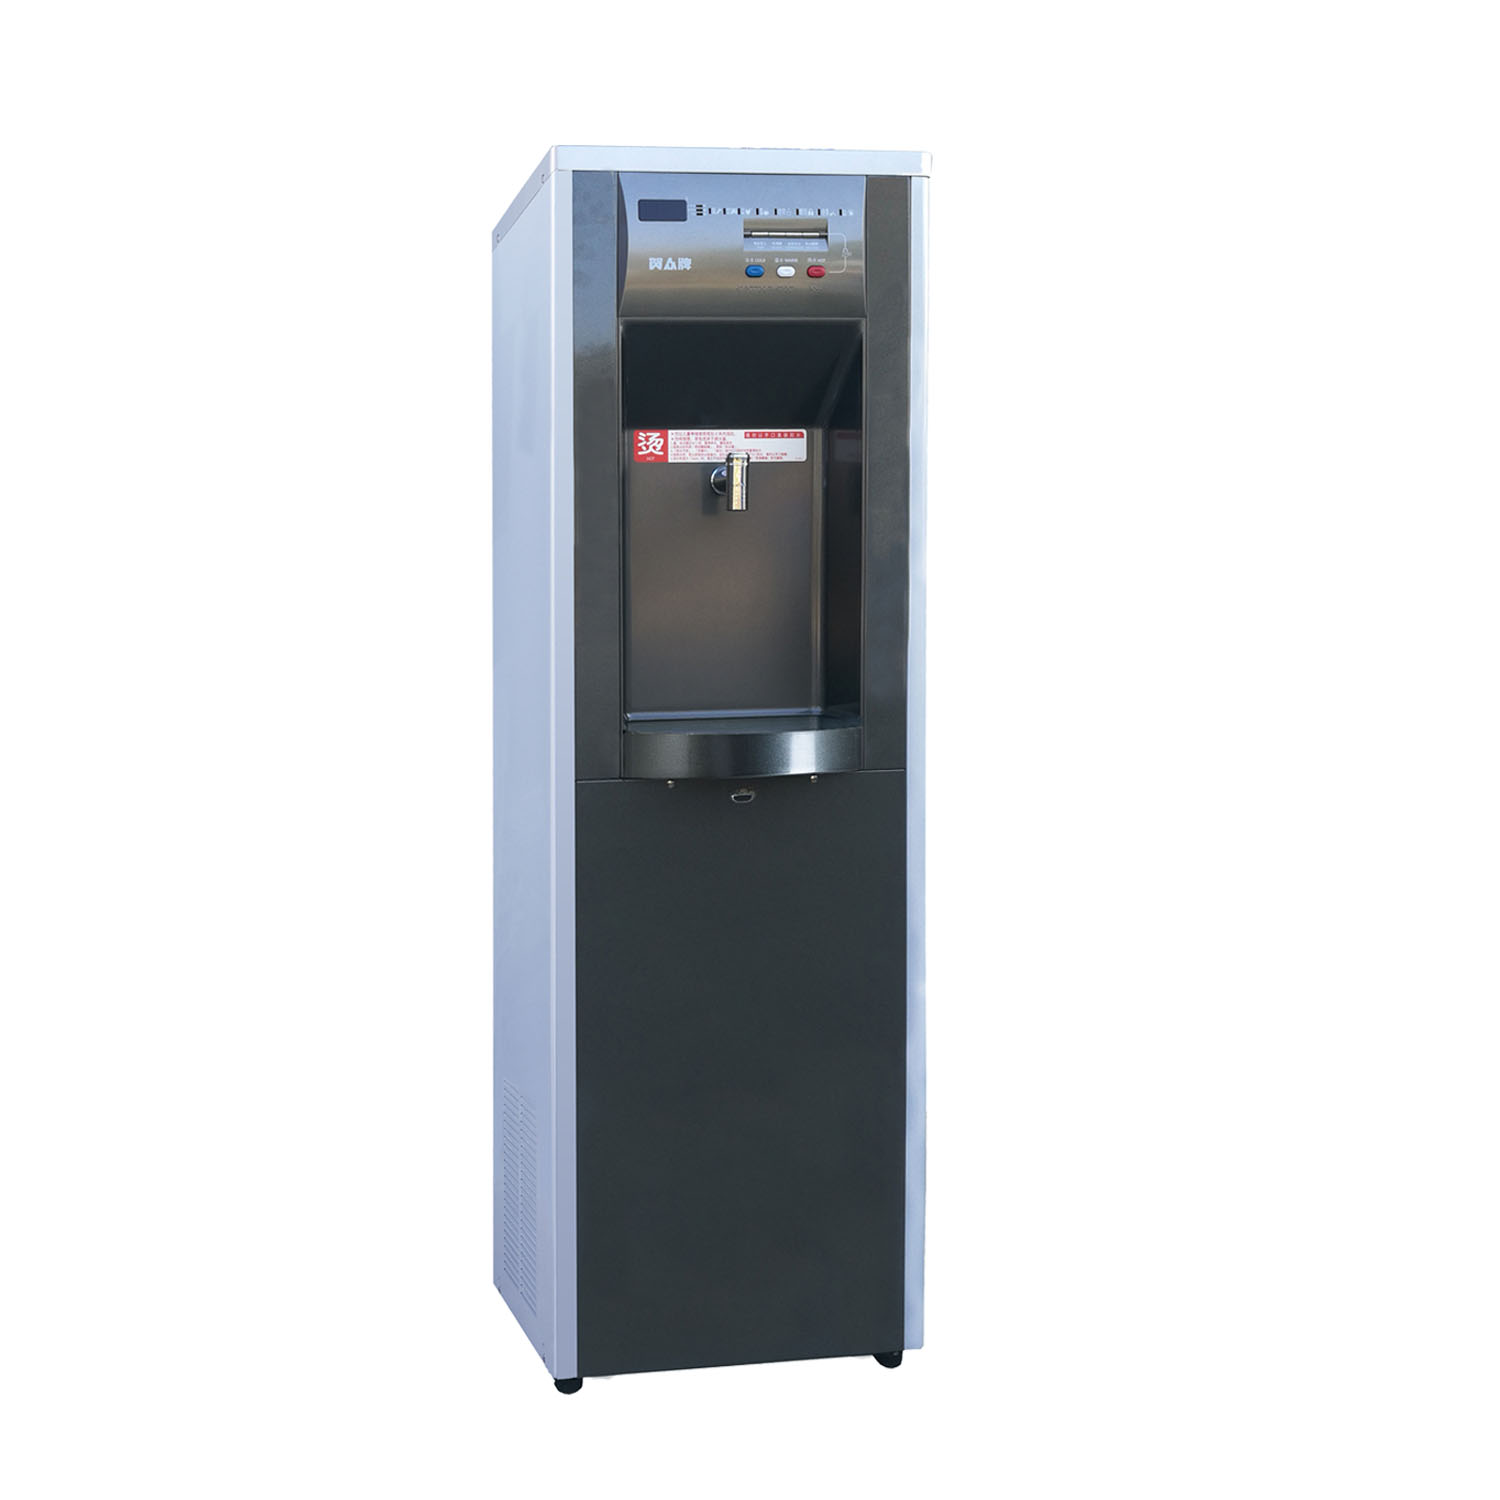 贺众牌UR-999AS-3X1冰温热纯水饮水机